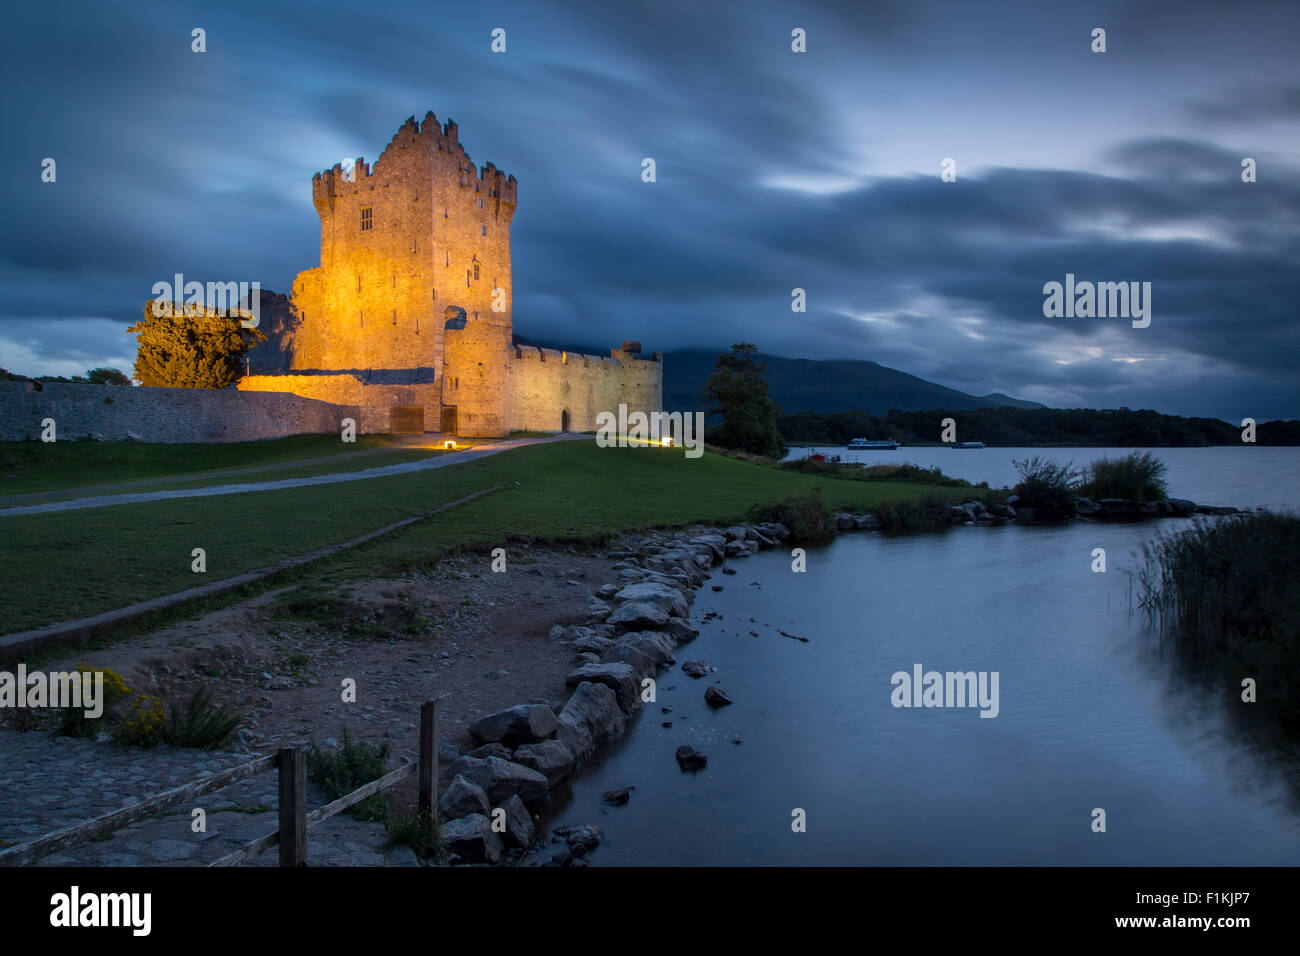 Le Château de Ross le long crépuscule sur le lac Lough Leane, le Parc National de Killarney, comté de Kerry, Irlande Banque D'Images